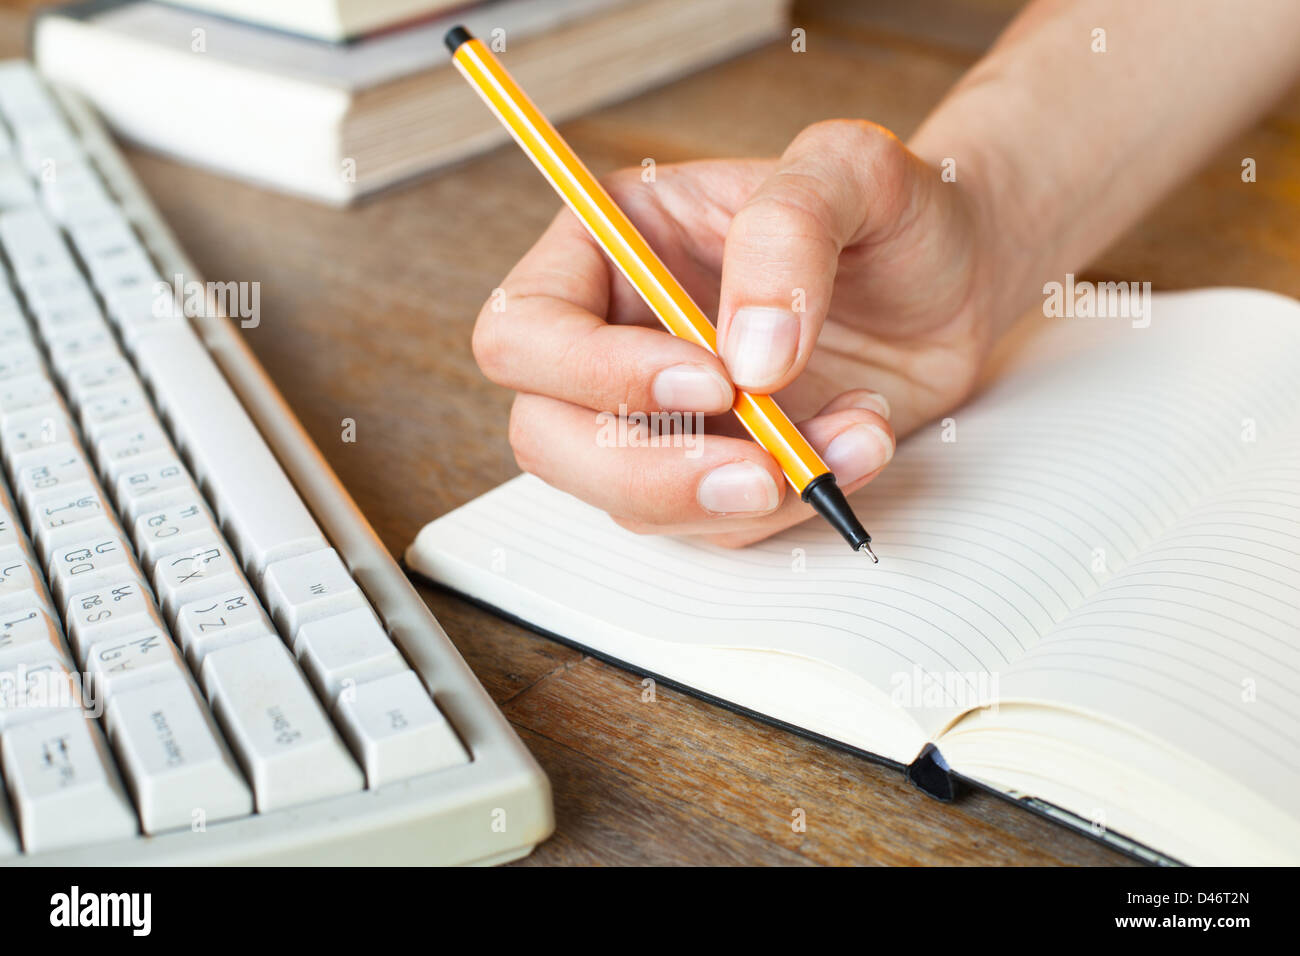 Jeune femme mains écrit un stylo dans un ordinateur portable, clavier de l'ordinateur et une pile de livres en arrière-plan Banque D'Images